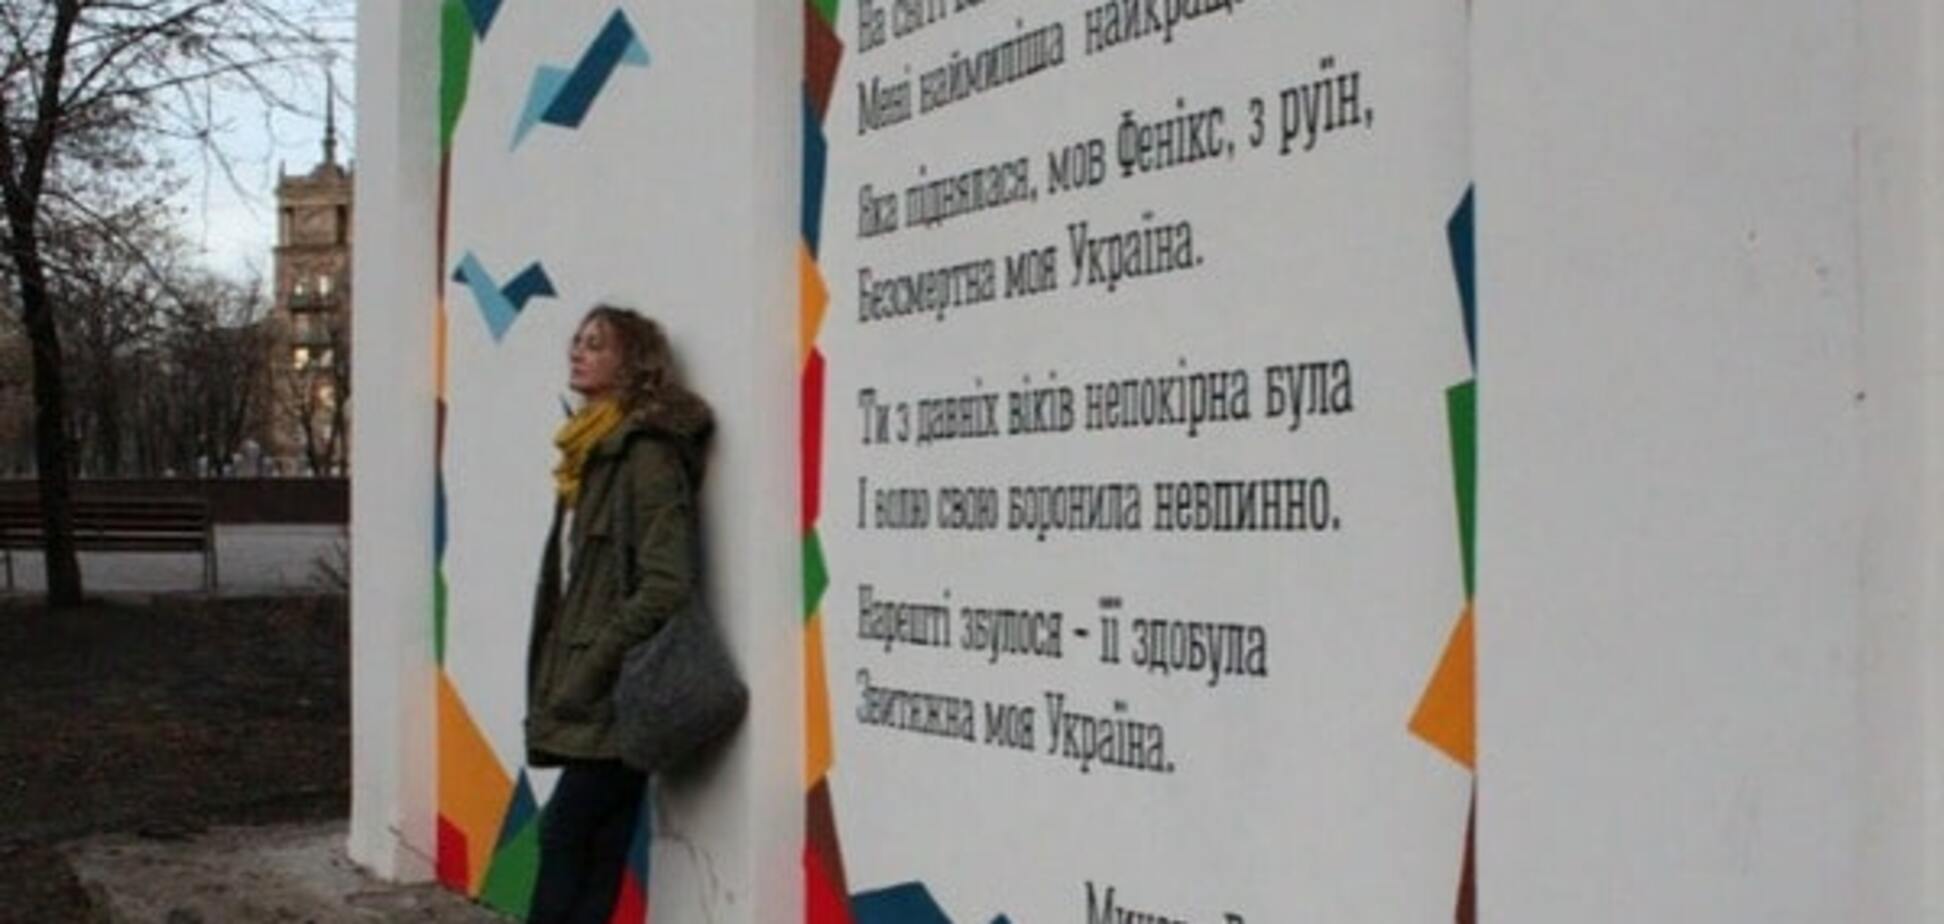 Дончанка расписала Мариуполь патриотическими стихами: фоторепортаж